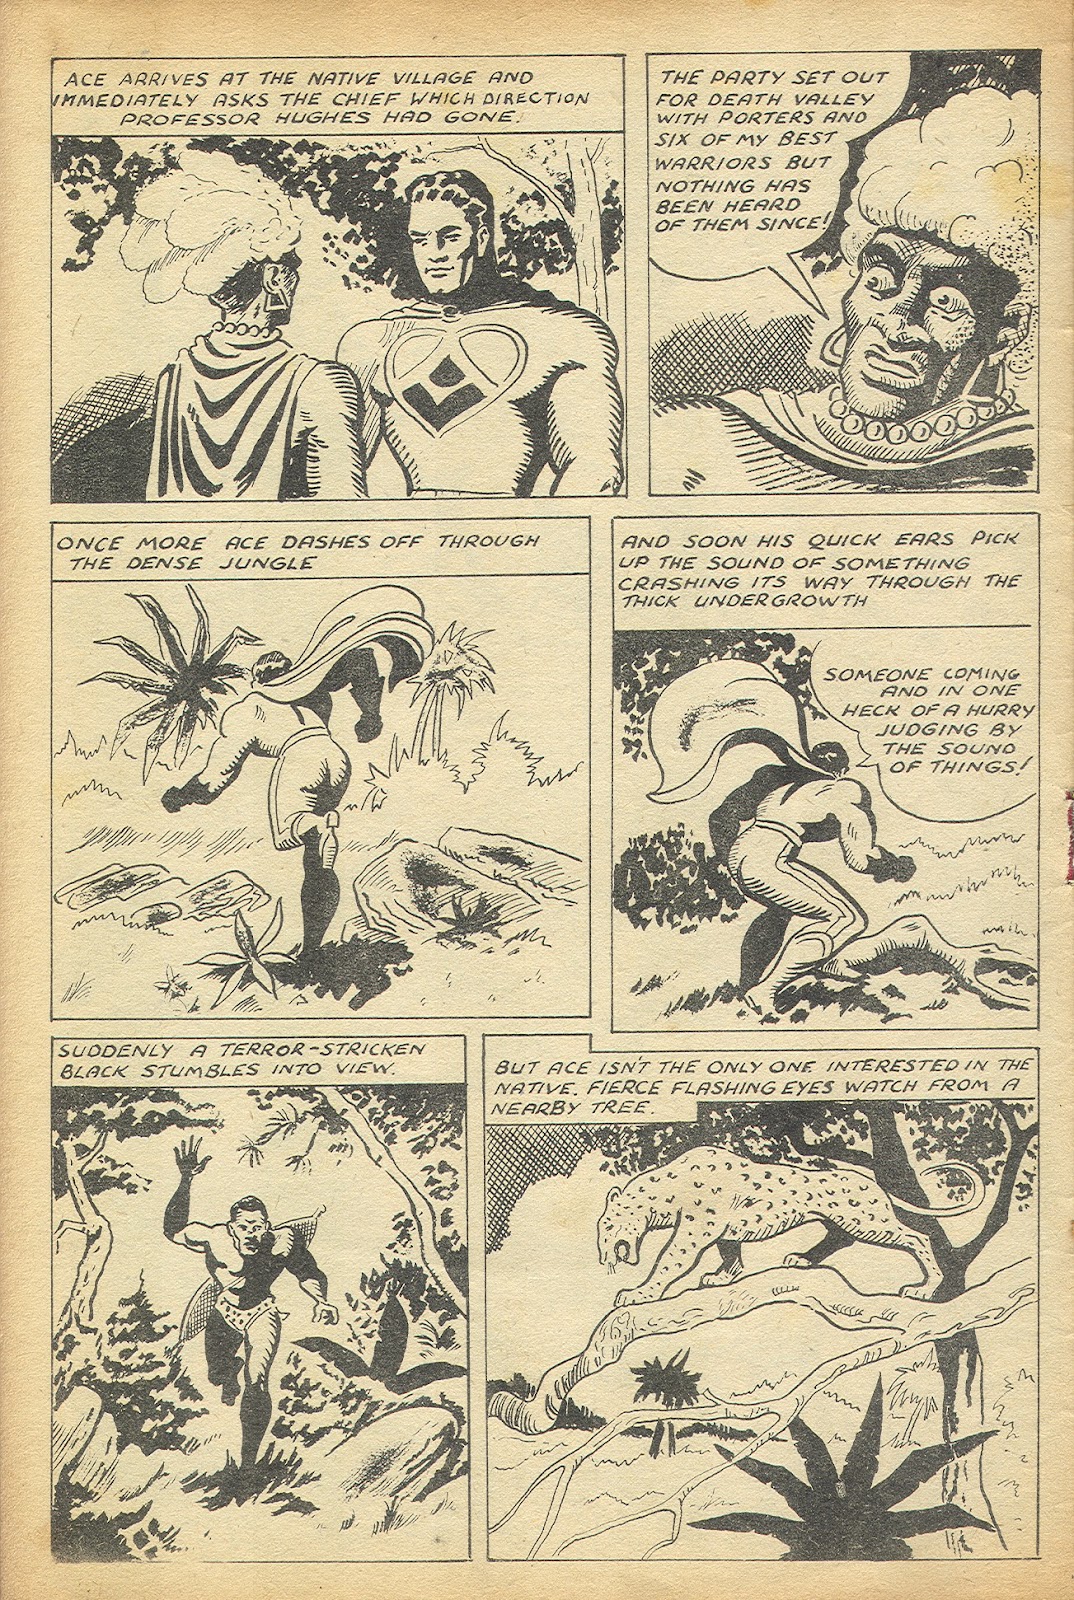 Super Thriller issue 12 - Page 4